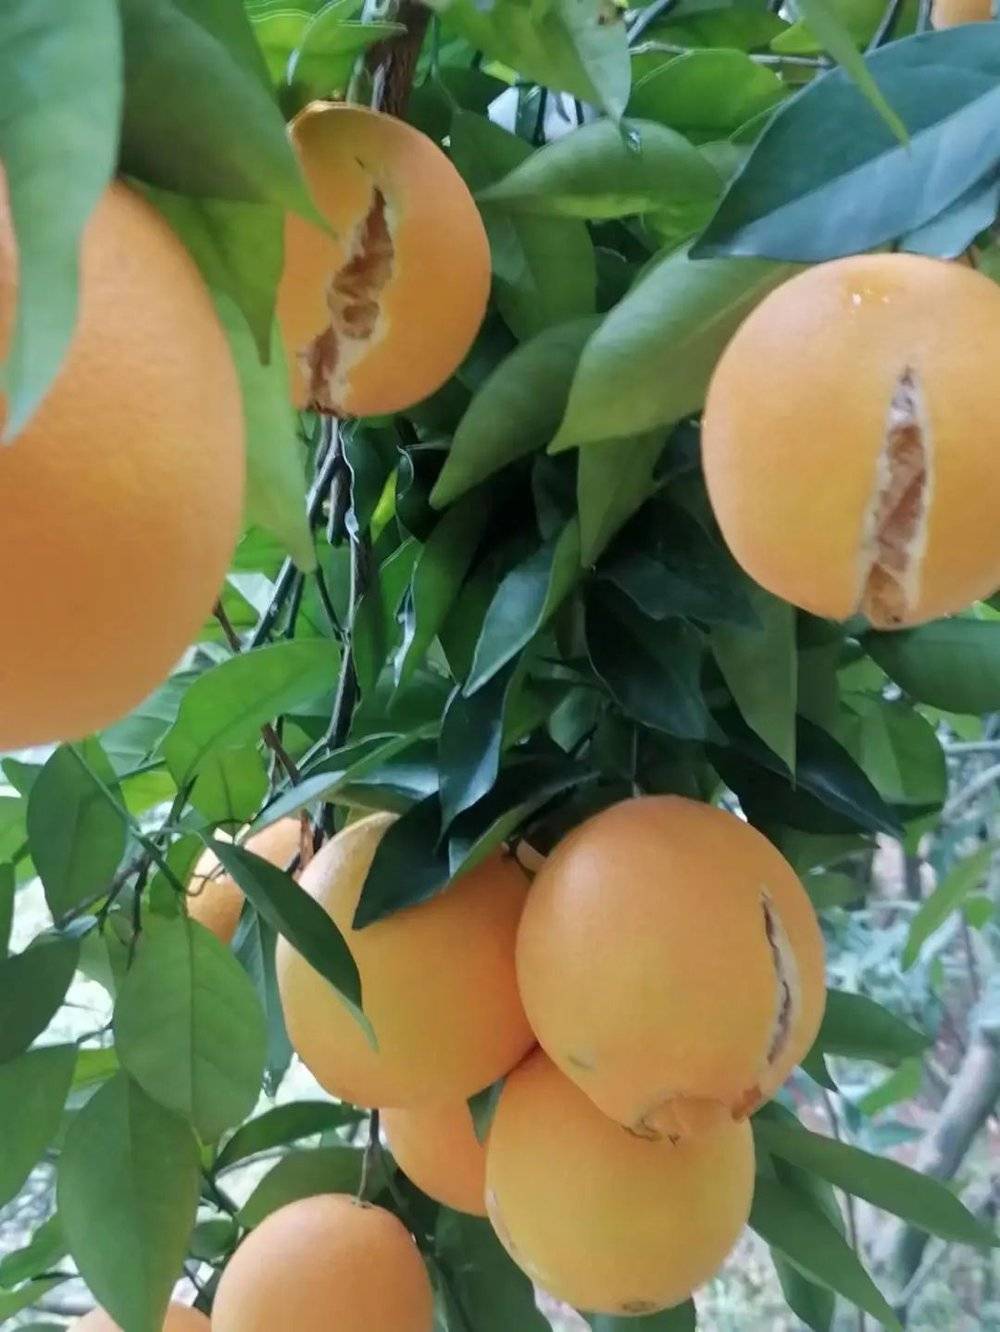 因水分过多而在树上开裂的脐橙。作者供图<br>